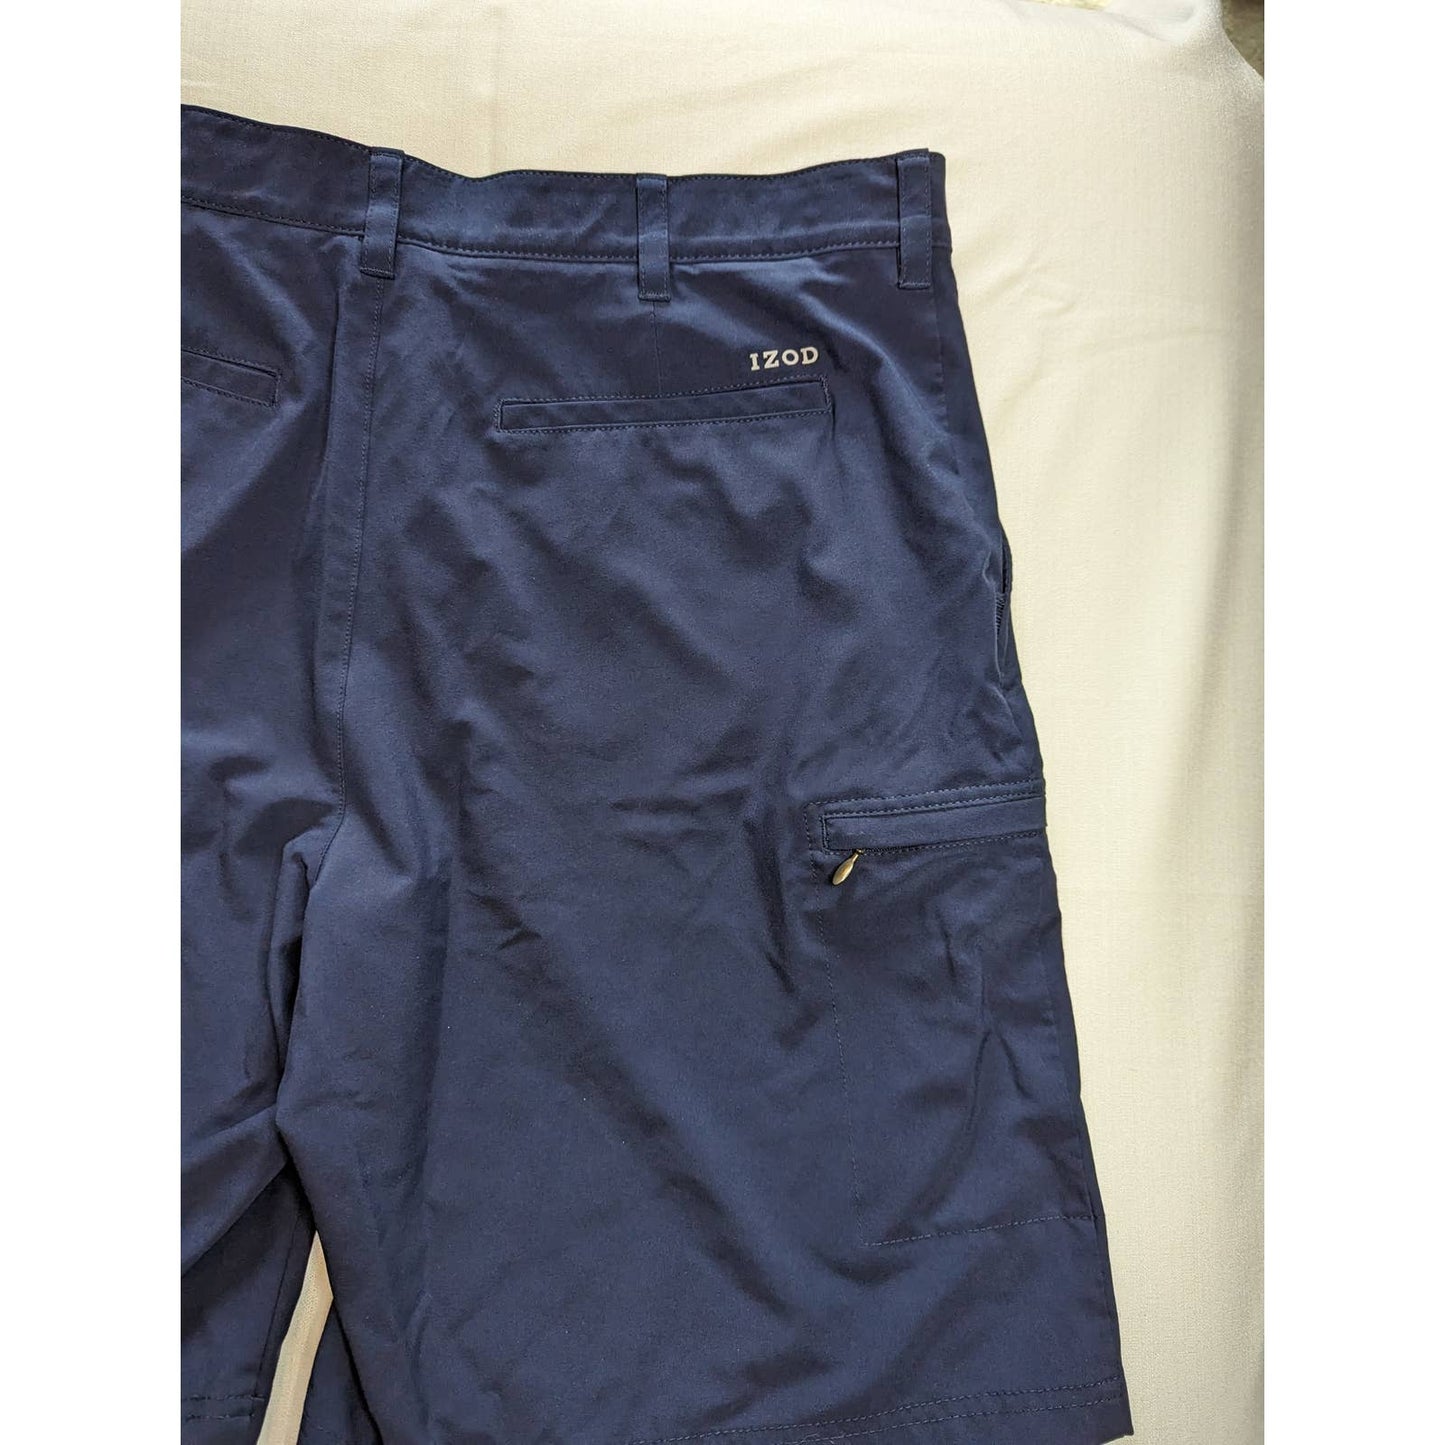 IZOD GOLF Navy Blue Men's Shorts Size 36 Summer Vacation